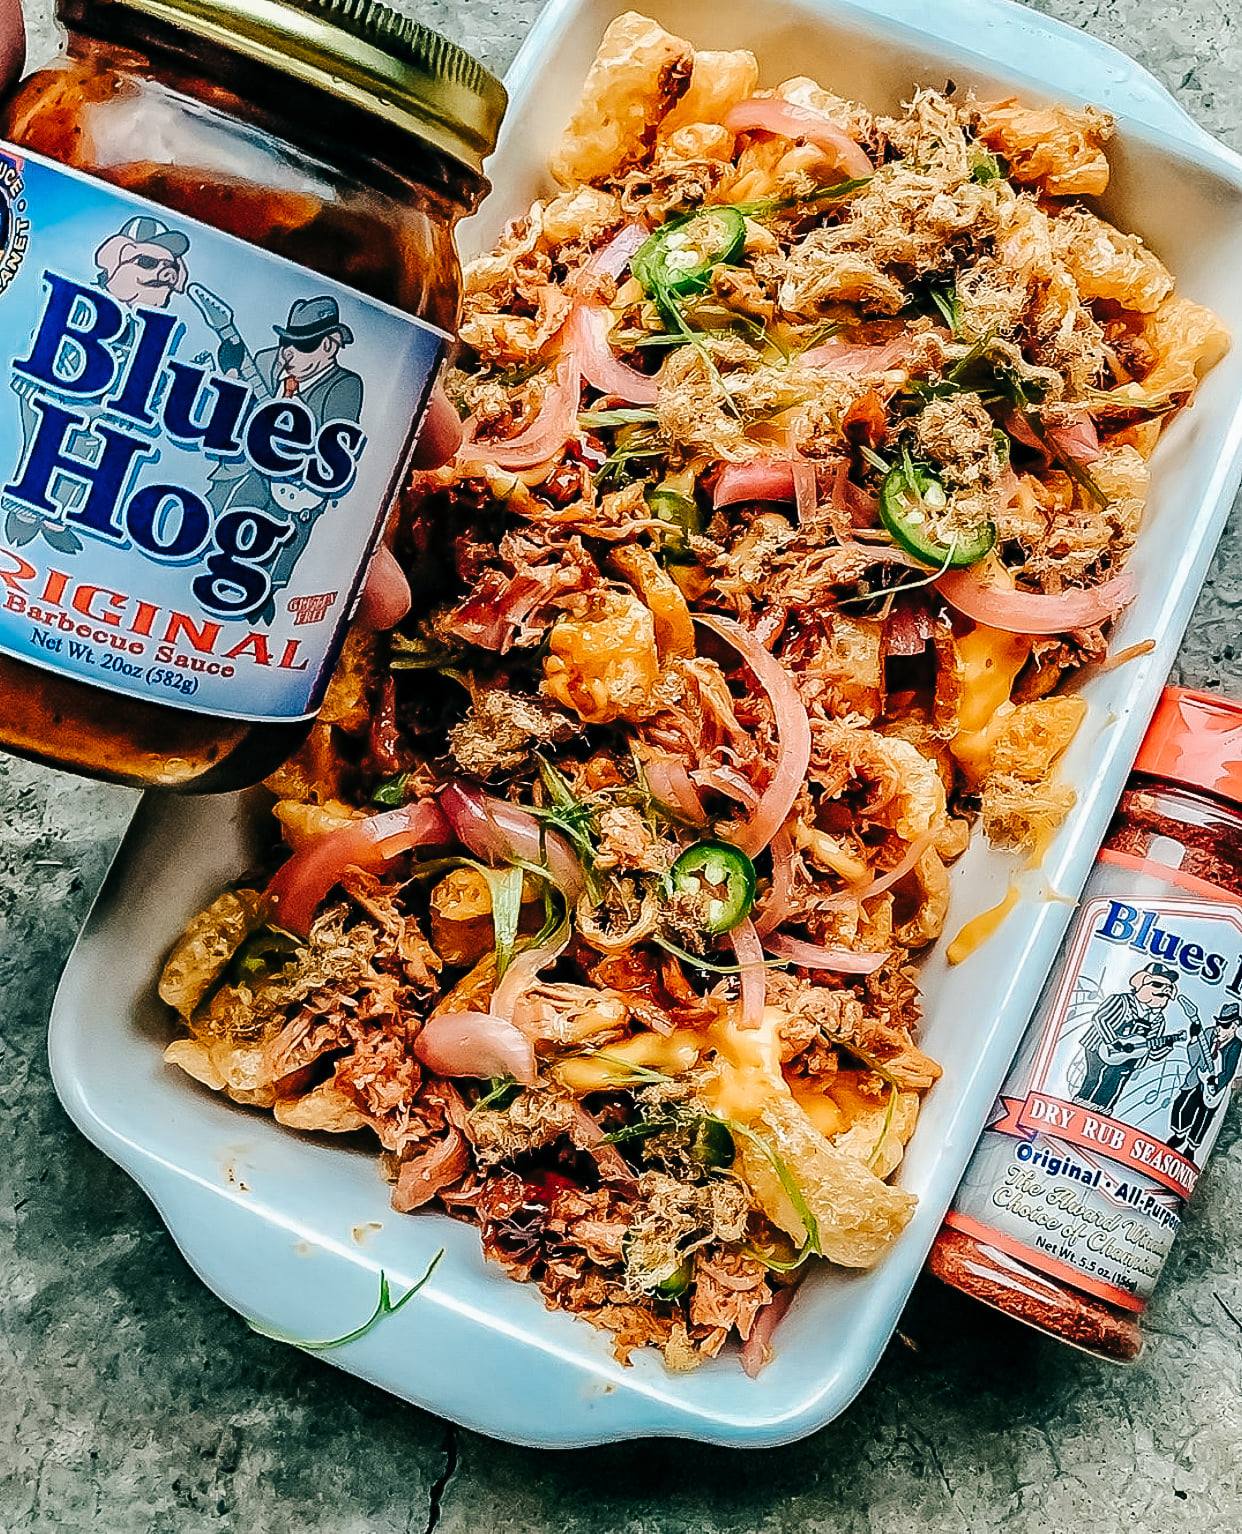 Blue's Hog Original BBQ Sauce